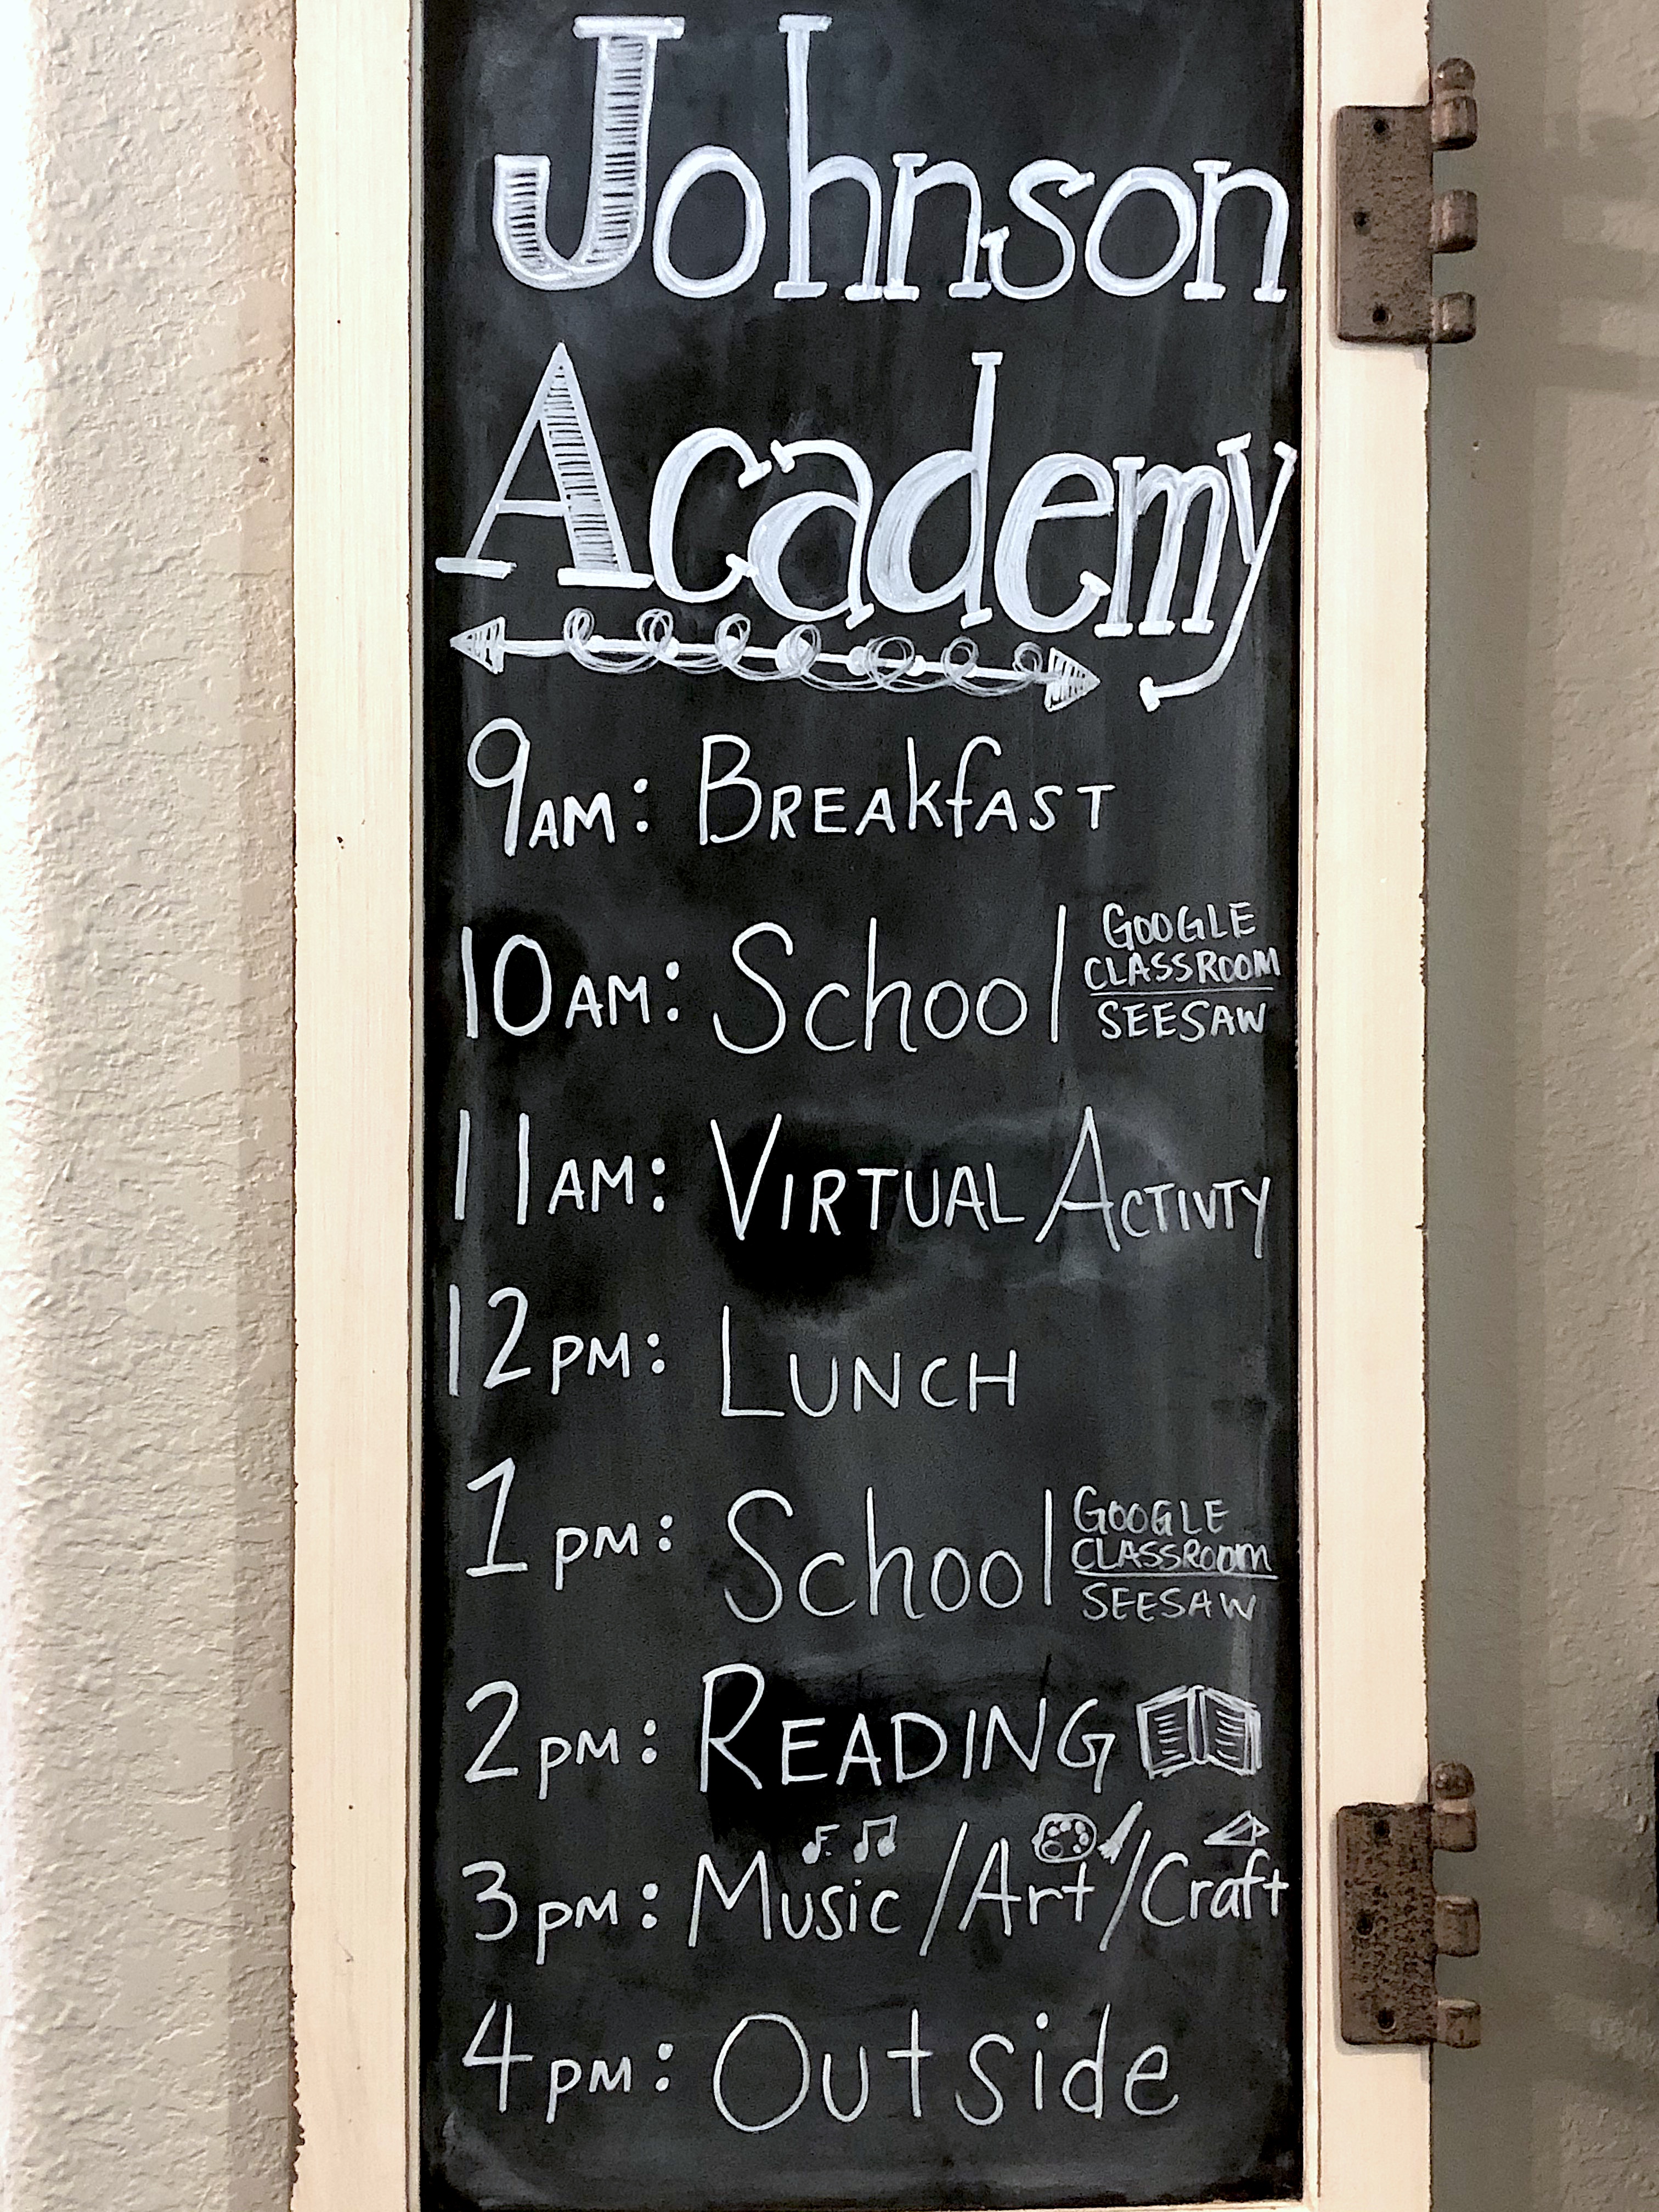 Johnson Academy Schedule